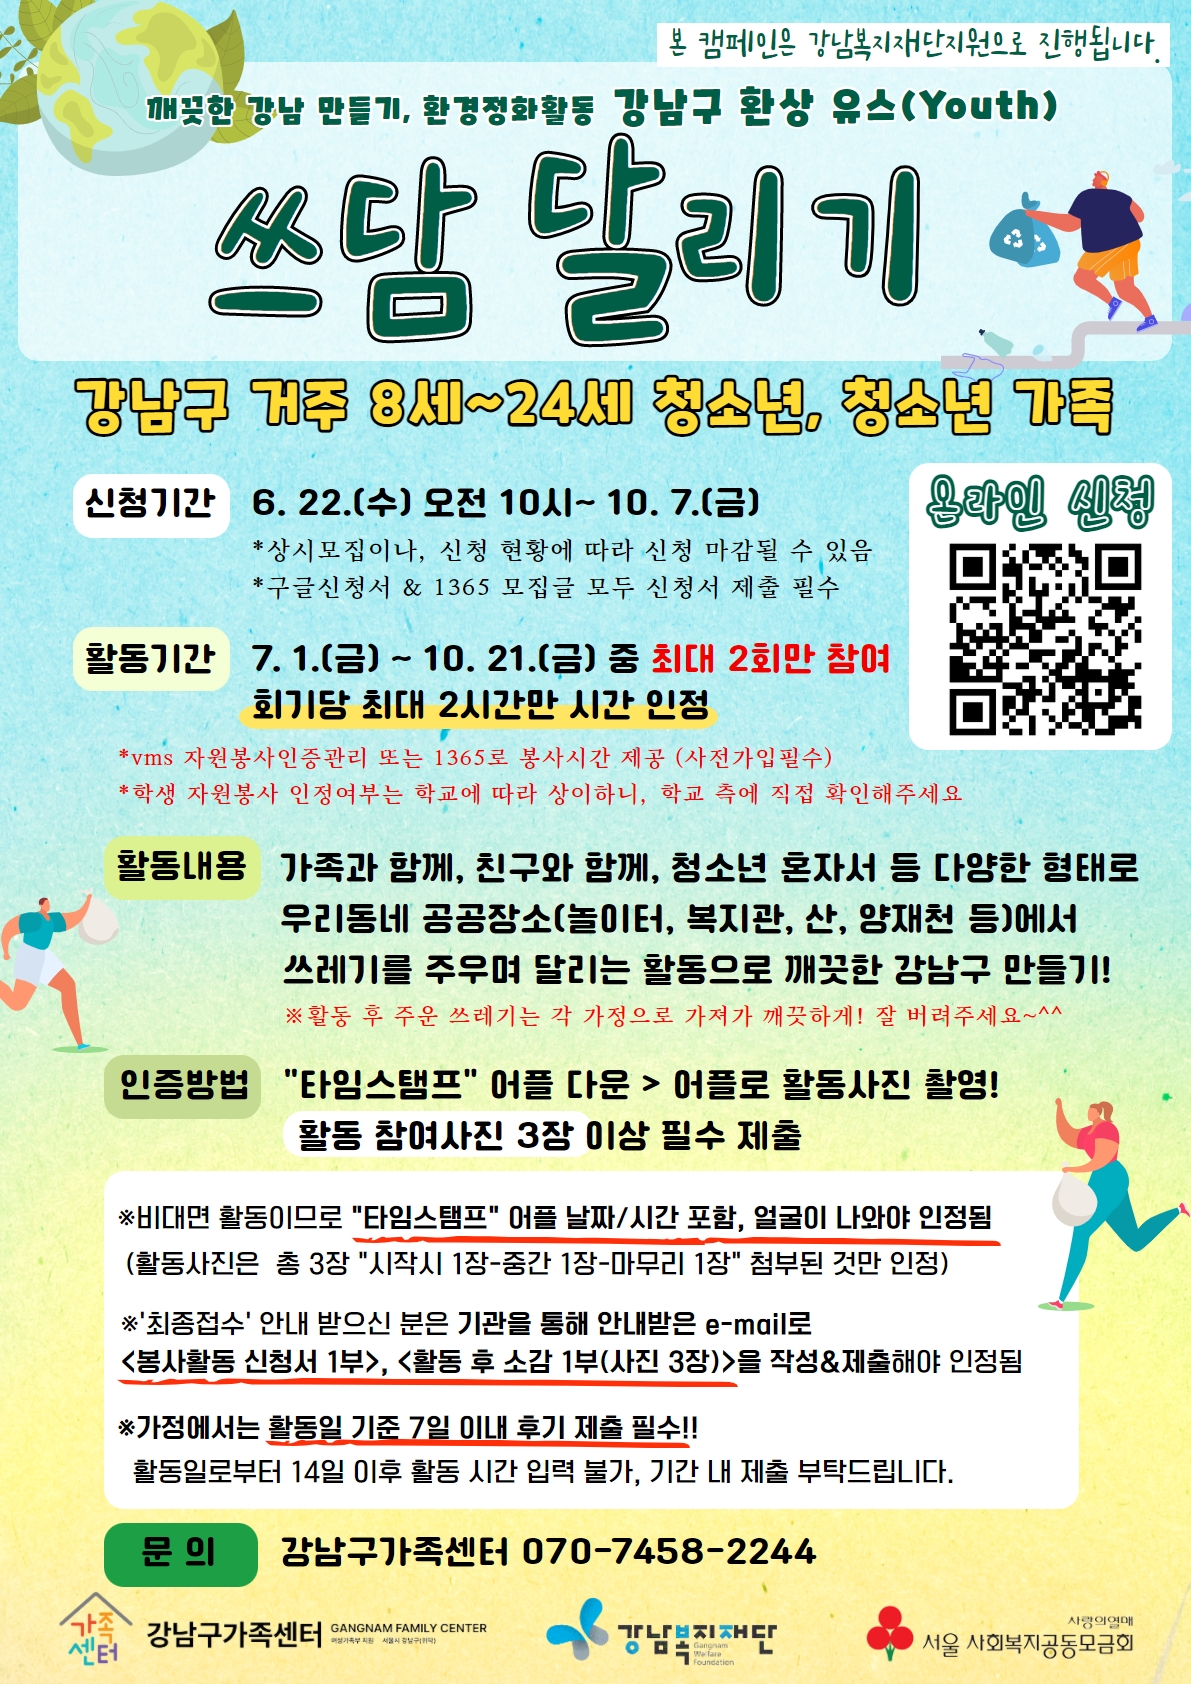 강남구자원봉사센터가 7월 1일부터 10월 21일까지 강남구 청소년과 가족이 함께 하는 '쓰담 달리기' 프로그램을 운영한다. 